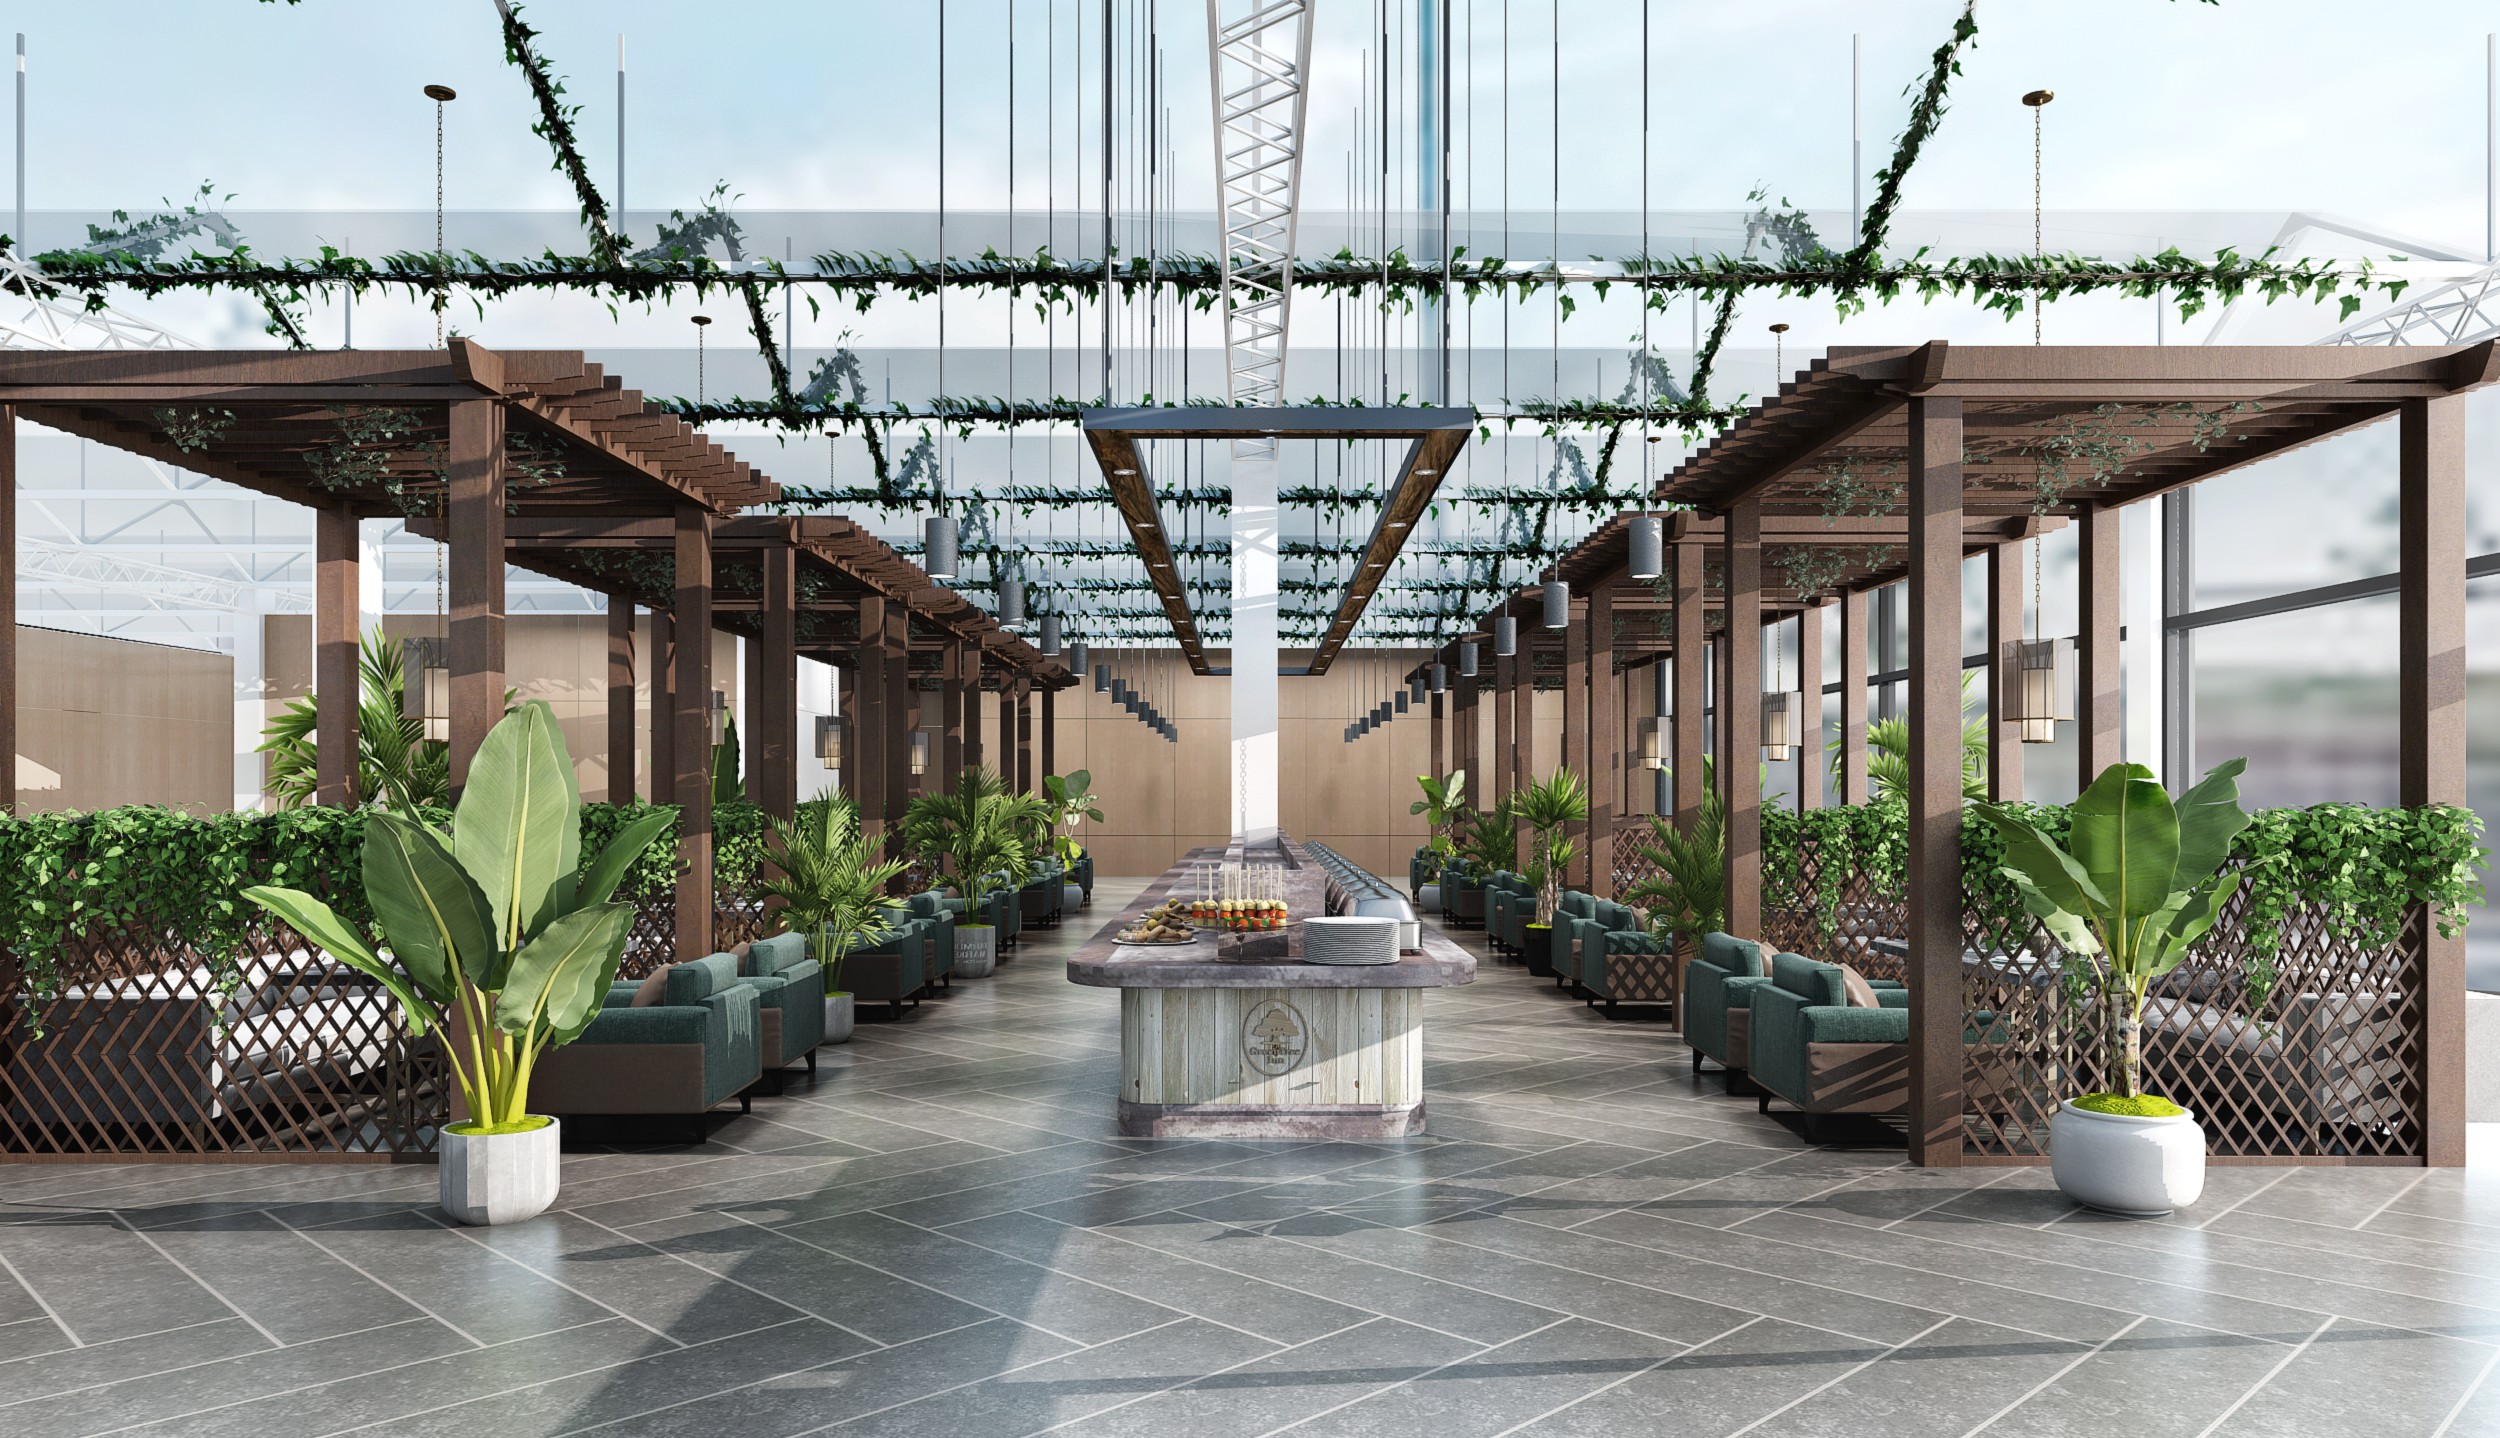 生态大棚餐厅 - 效果图交流区-建E室内设计网